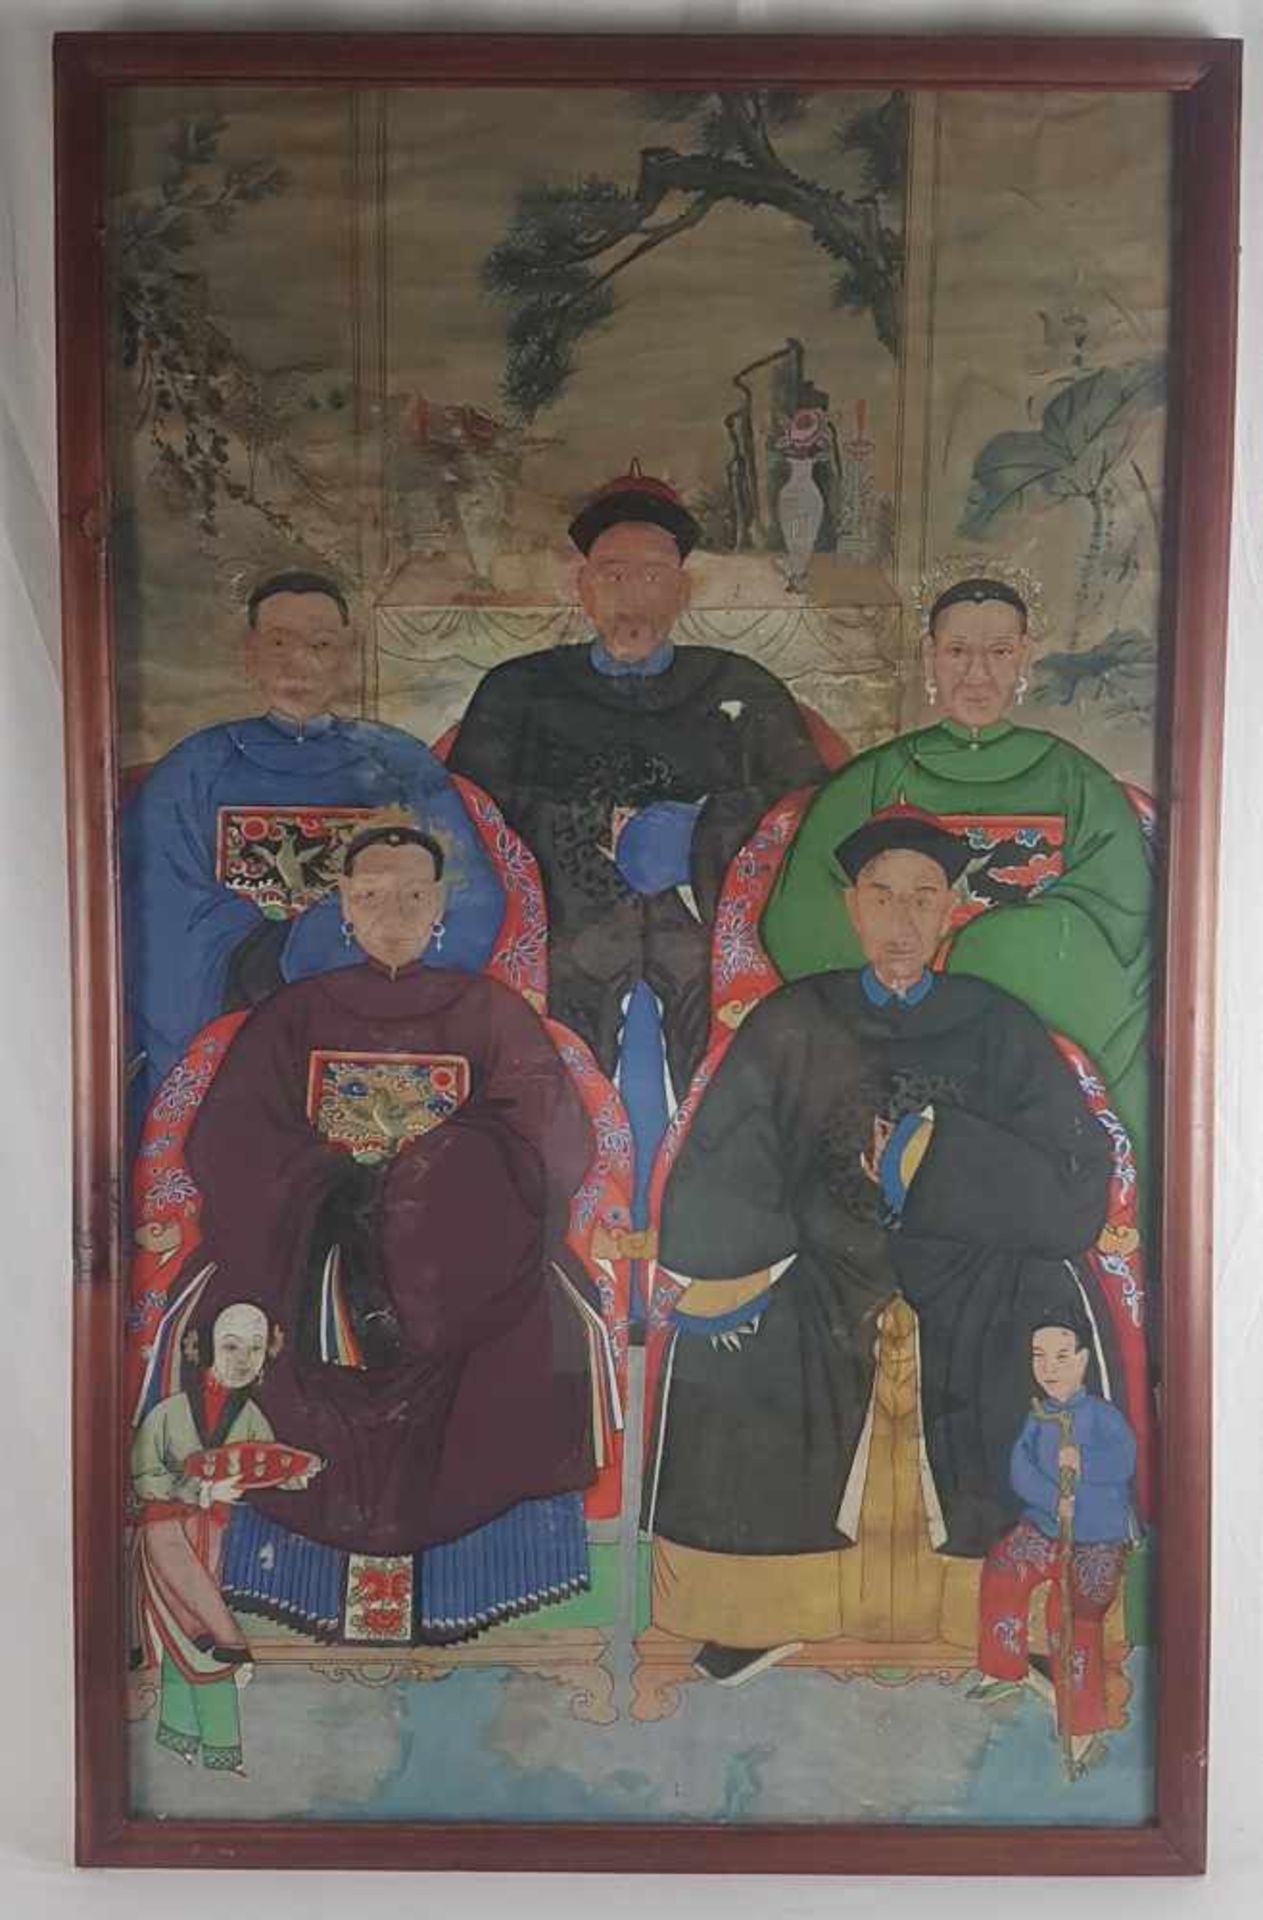 Ahnenbild - vielfigurige Darstellung der Vorfahren einer chinesischen Familie, in zwei Reihen